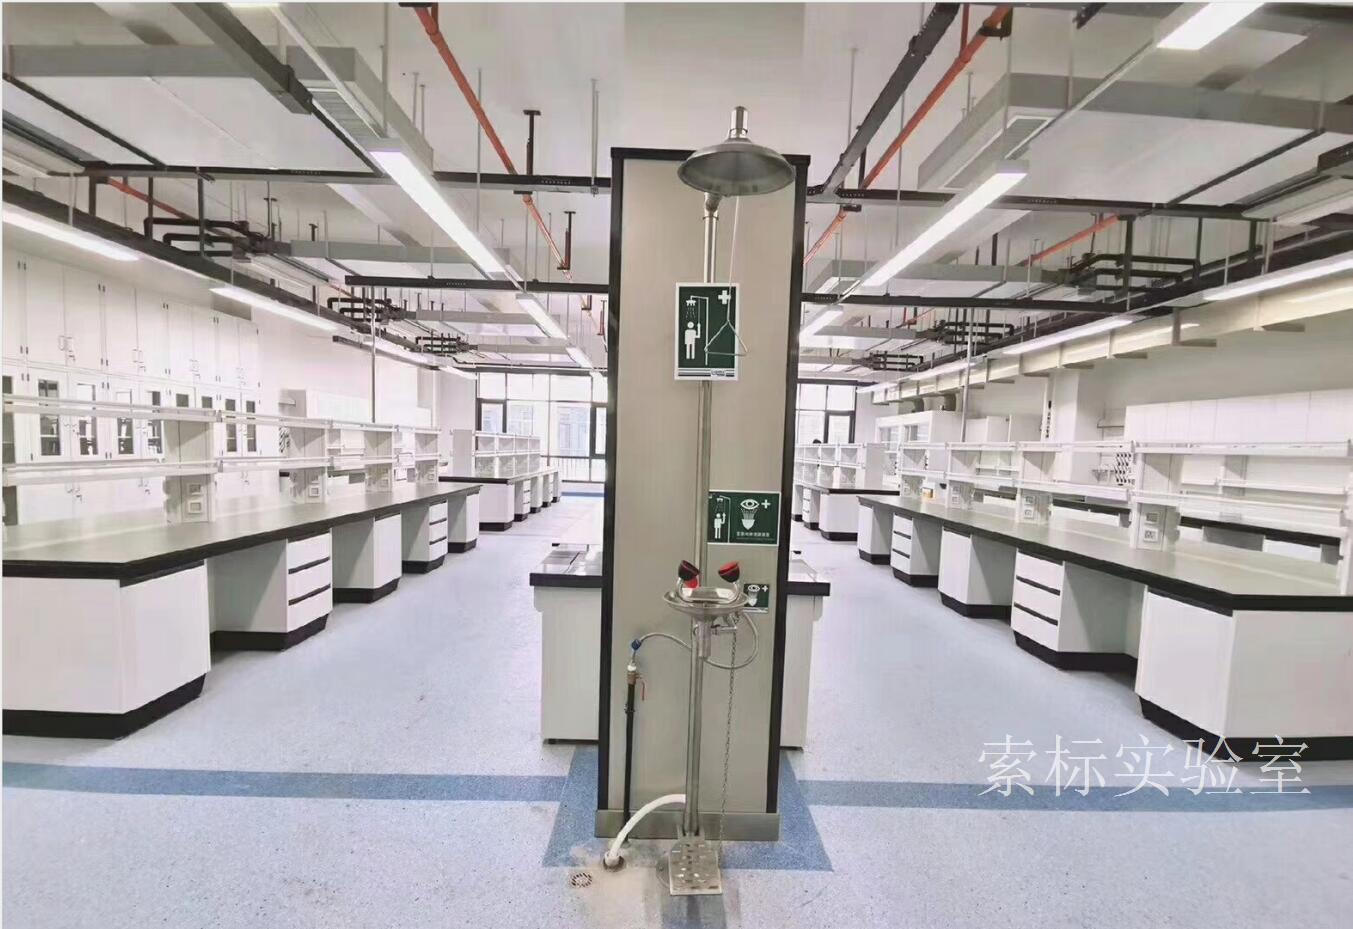 上海全钢实验台-上海全钢实验台报价-全钢实验台厂家